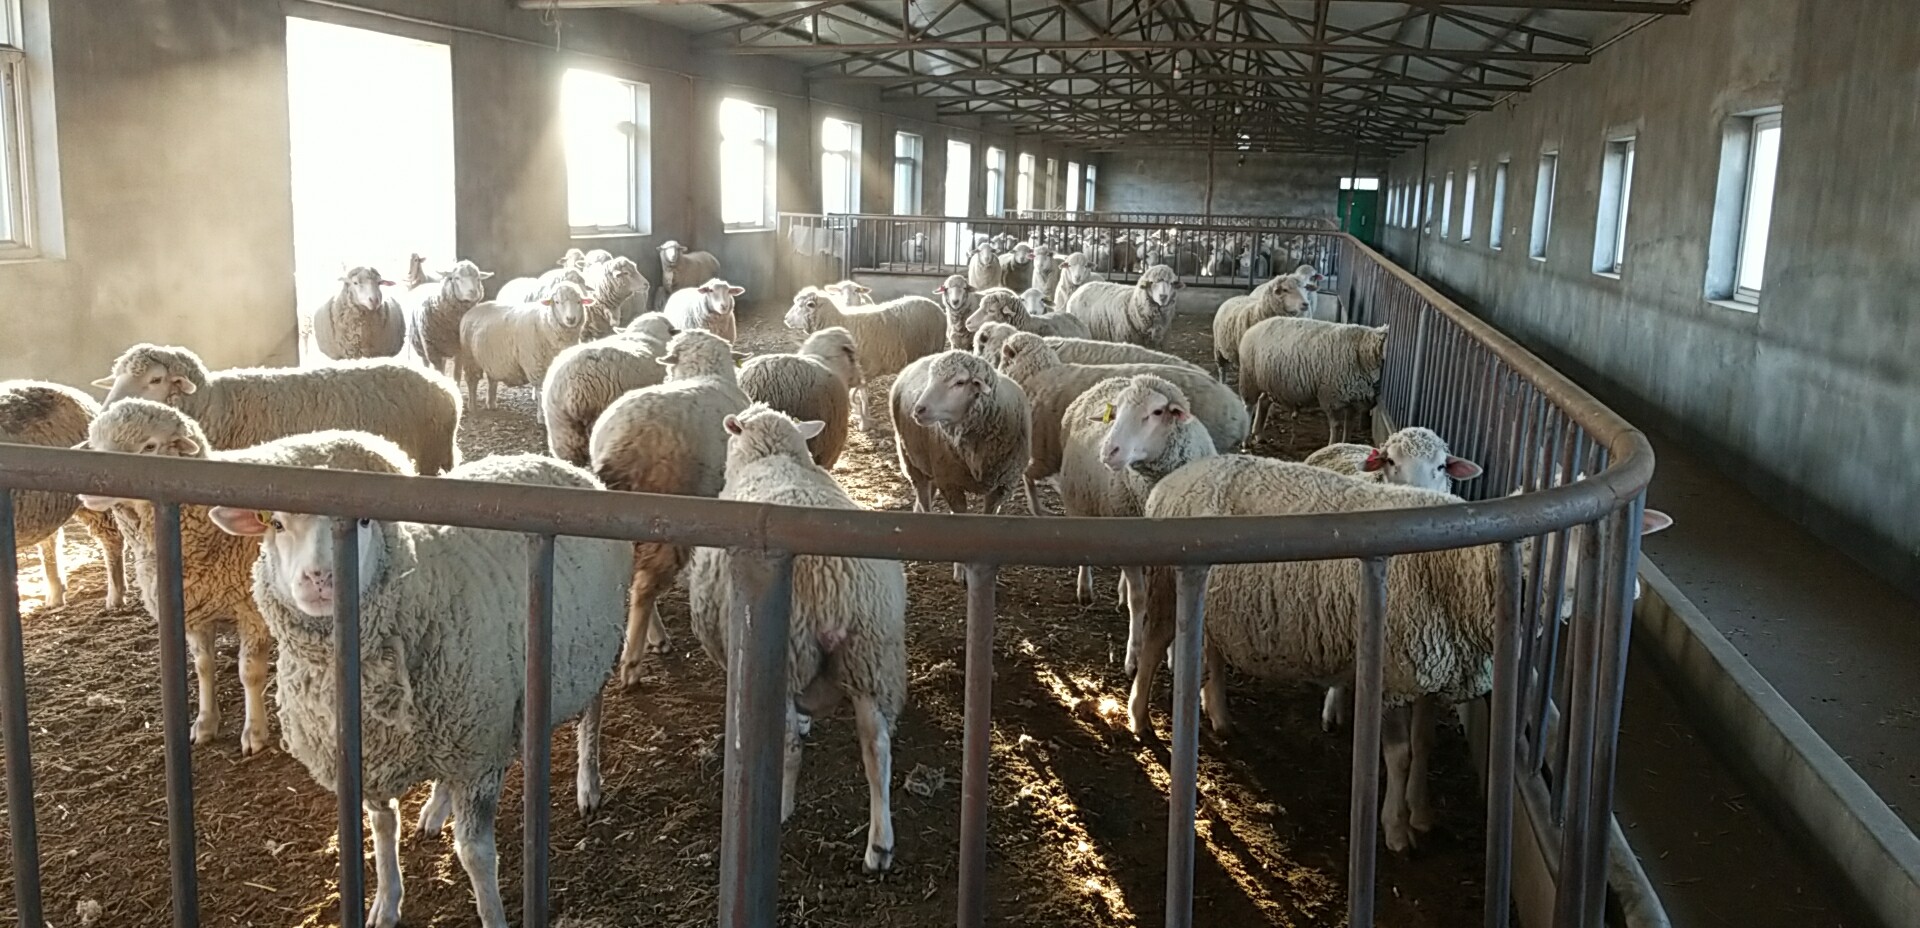 辽宁省农业科学院肉羊改良繁育中心--羊